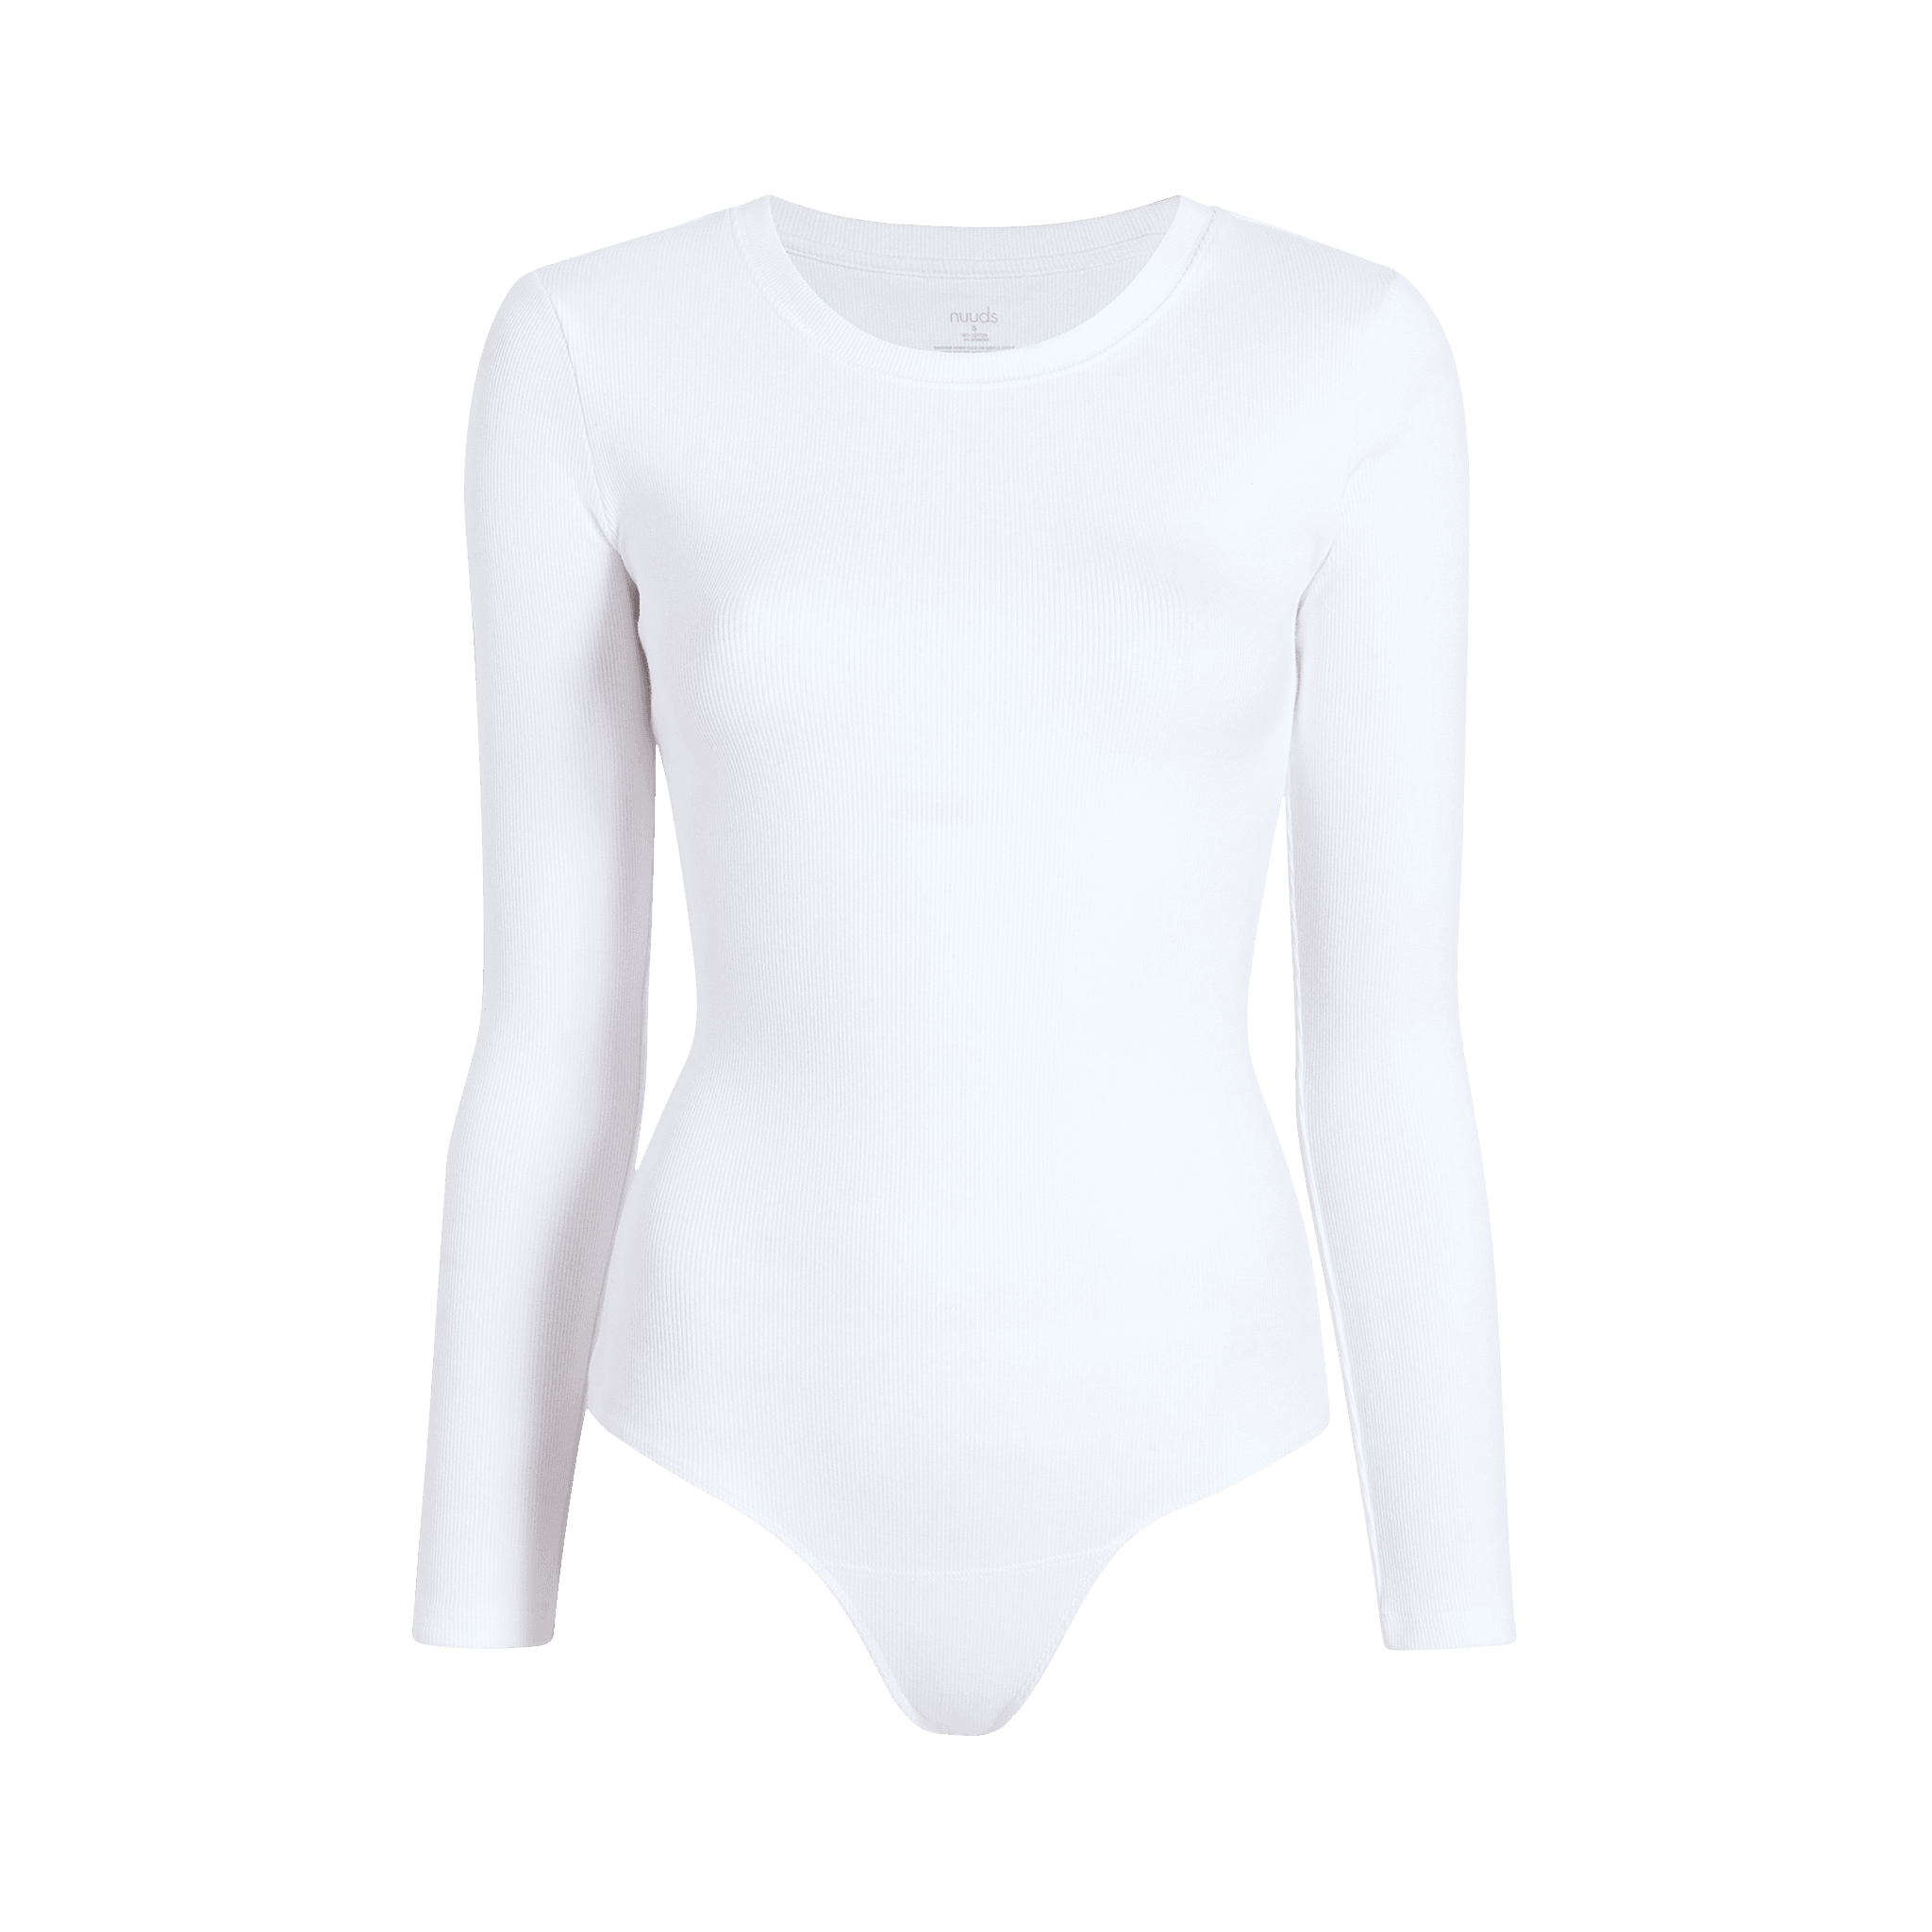 Women's Long Sleeve White Bodysuit Costume